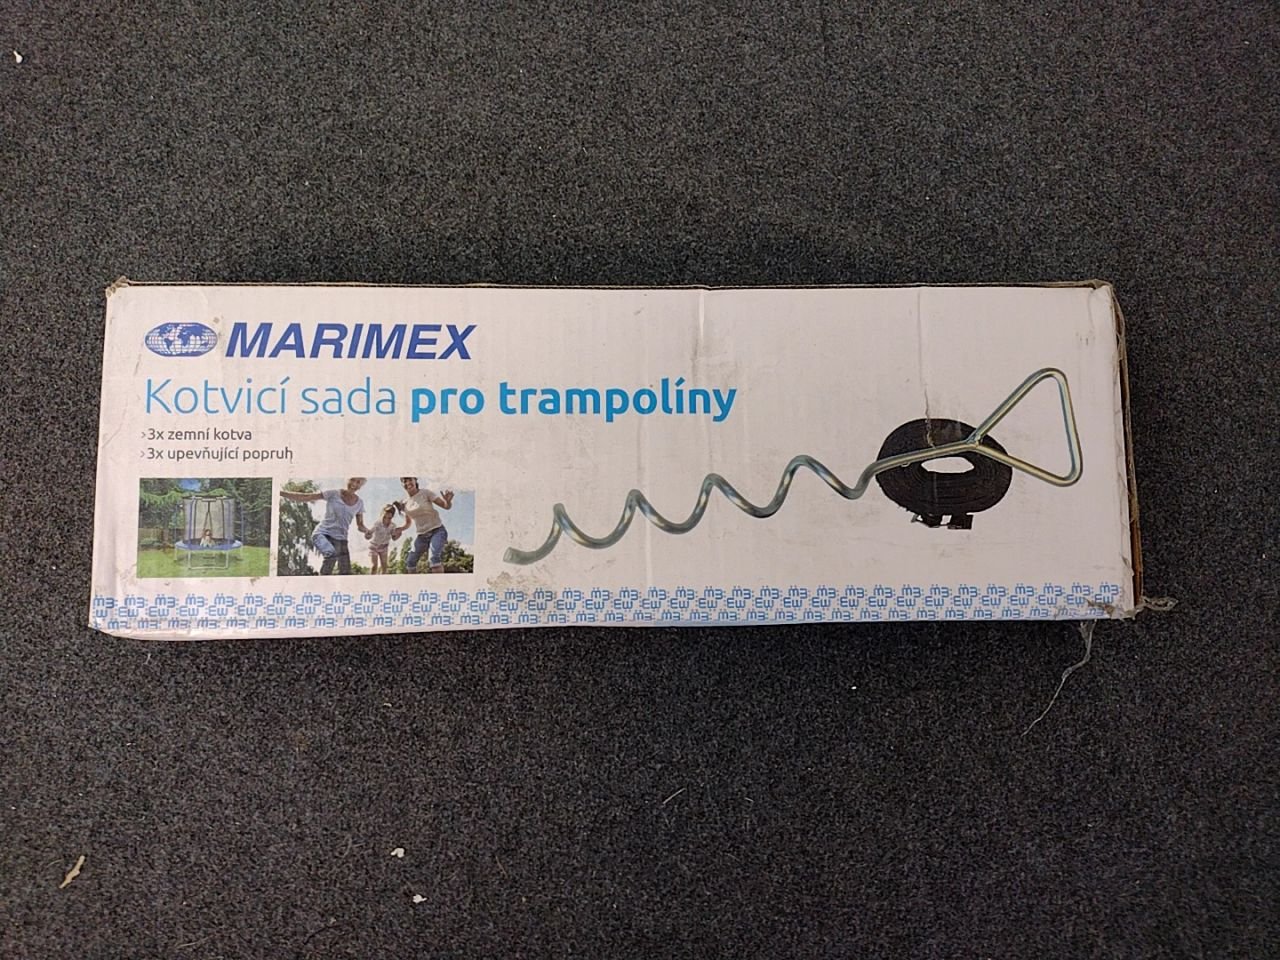 Kotvící sada pro trampolíny - kotvy, popruhy Marimex chybí 1 popruh